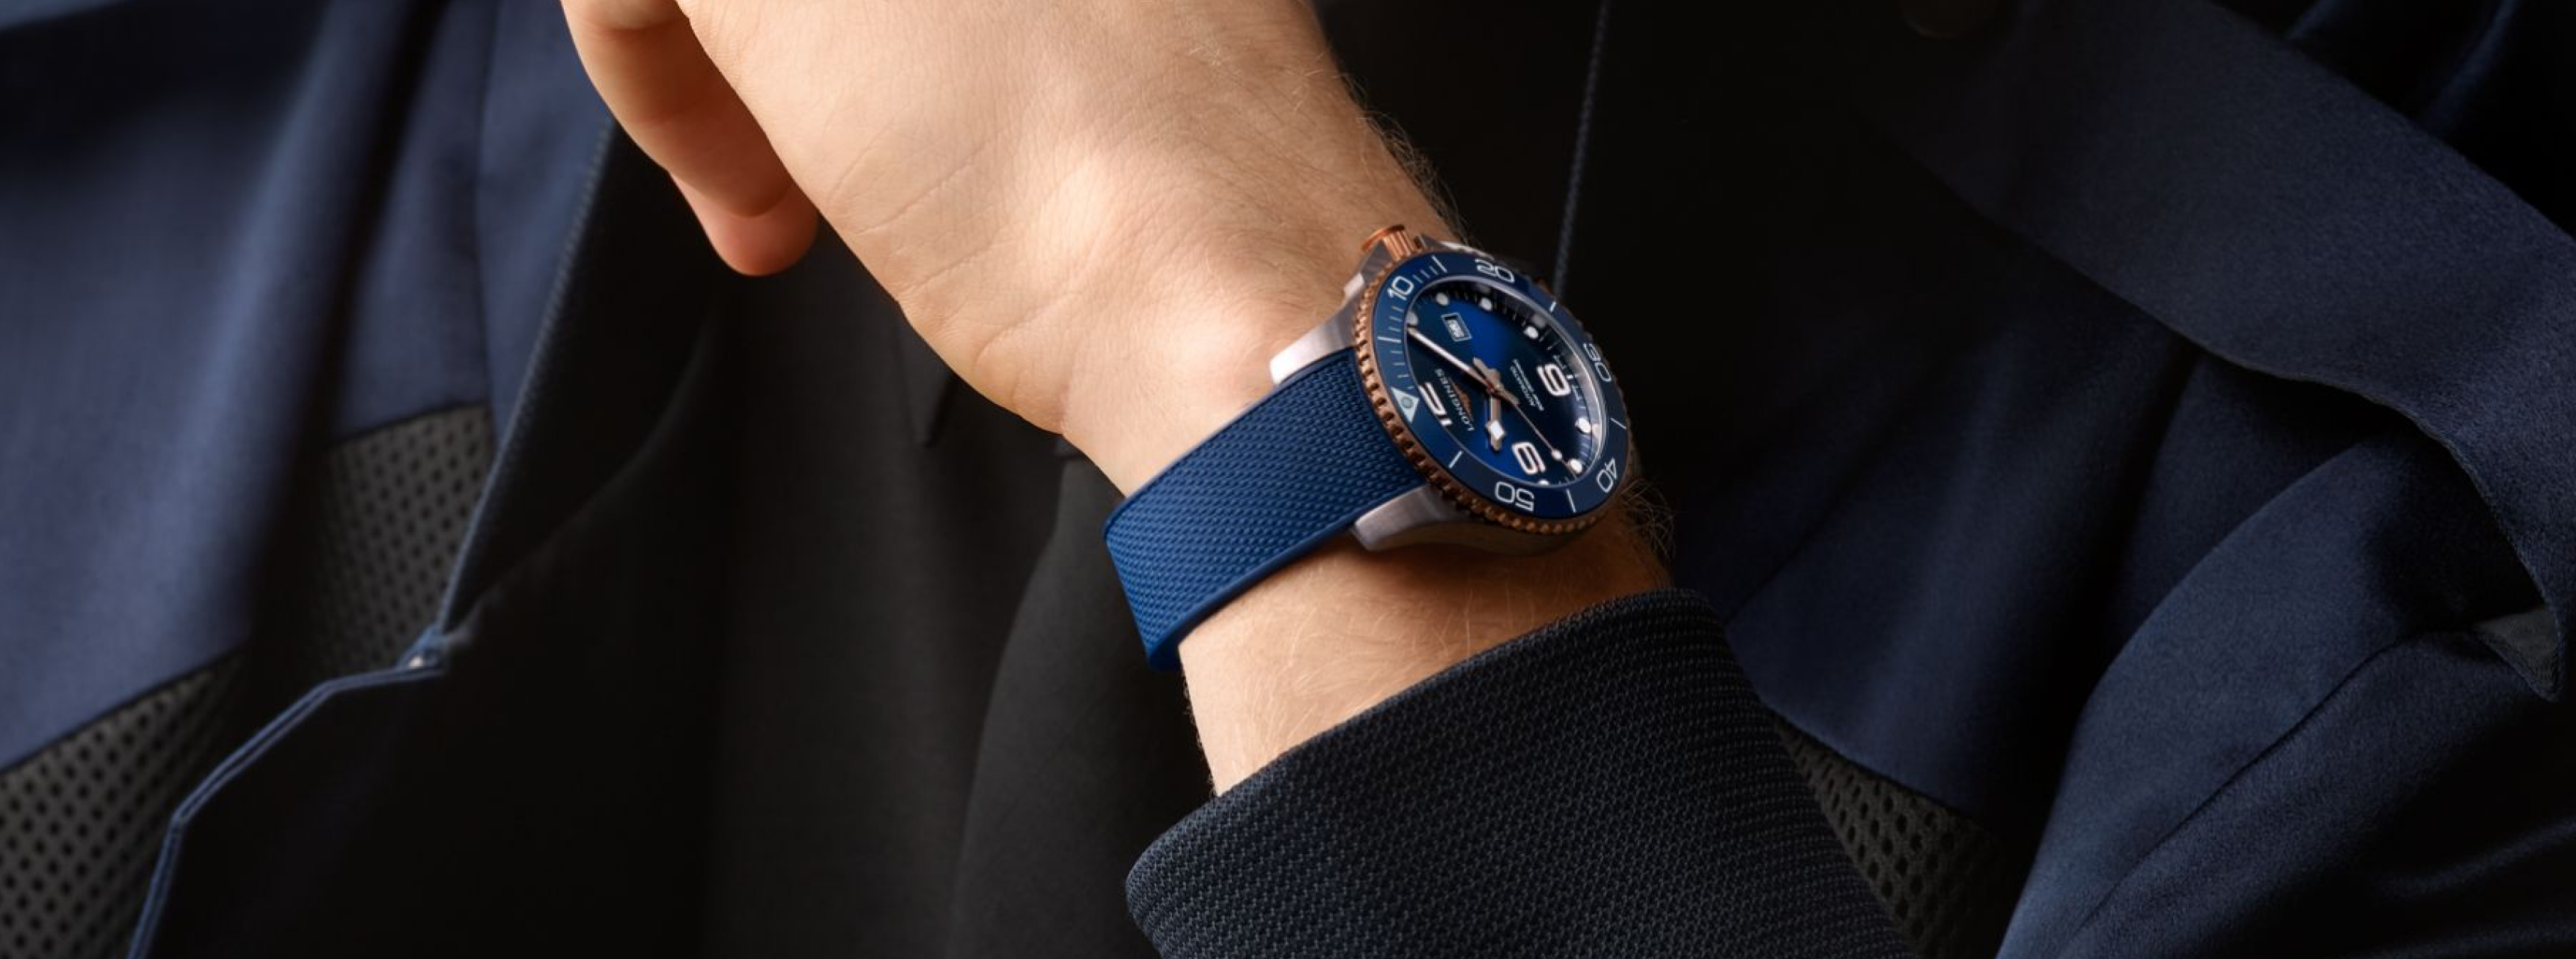 Zils pulkstenis uz vīrieša rokas, fotosesija Watch pieejas uzņēmuma dizainam